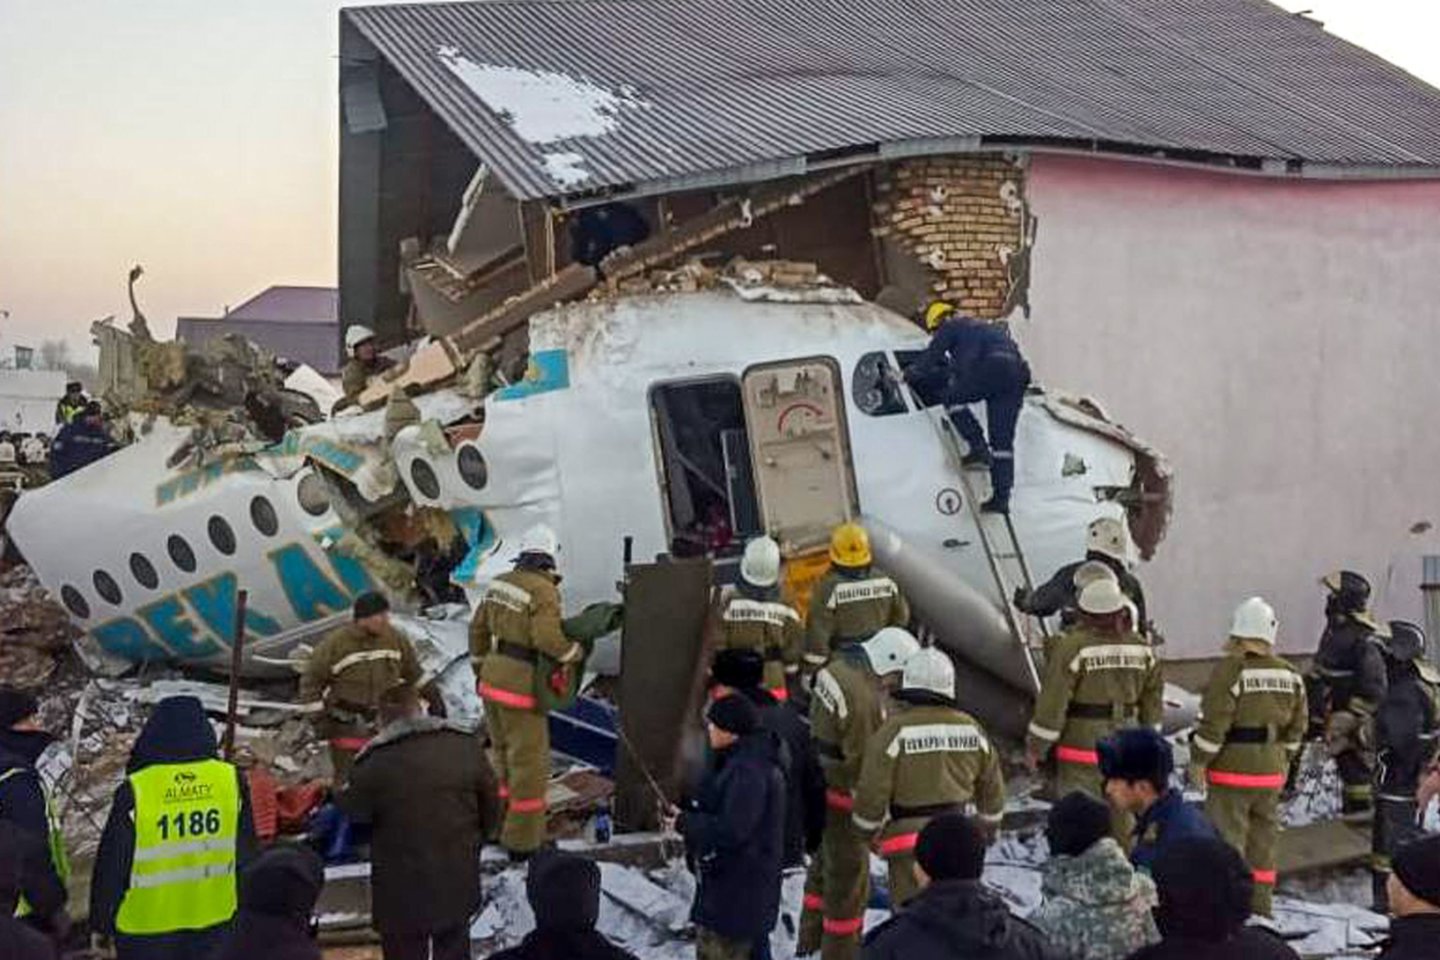  Ankstyvą penktadienio rytą Kazachstane nukrito lėktuvas, kuriuo skrido 100 žmonių. Kaip praneša BBC, lėktuvas nukrito vos pakilęs iš oro uosto Almatoje. Gelbėjimo tarnybos praneša apie 15 žmonių žūtį.  <br>AFP/Scanpix nuotr.